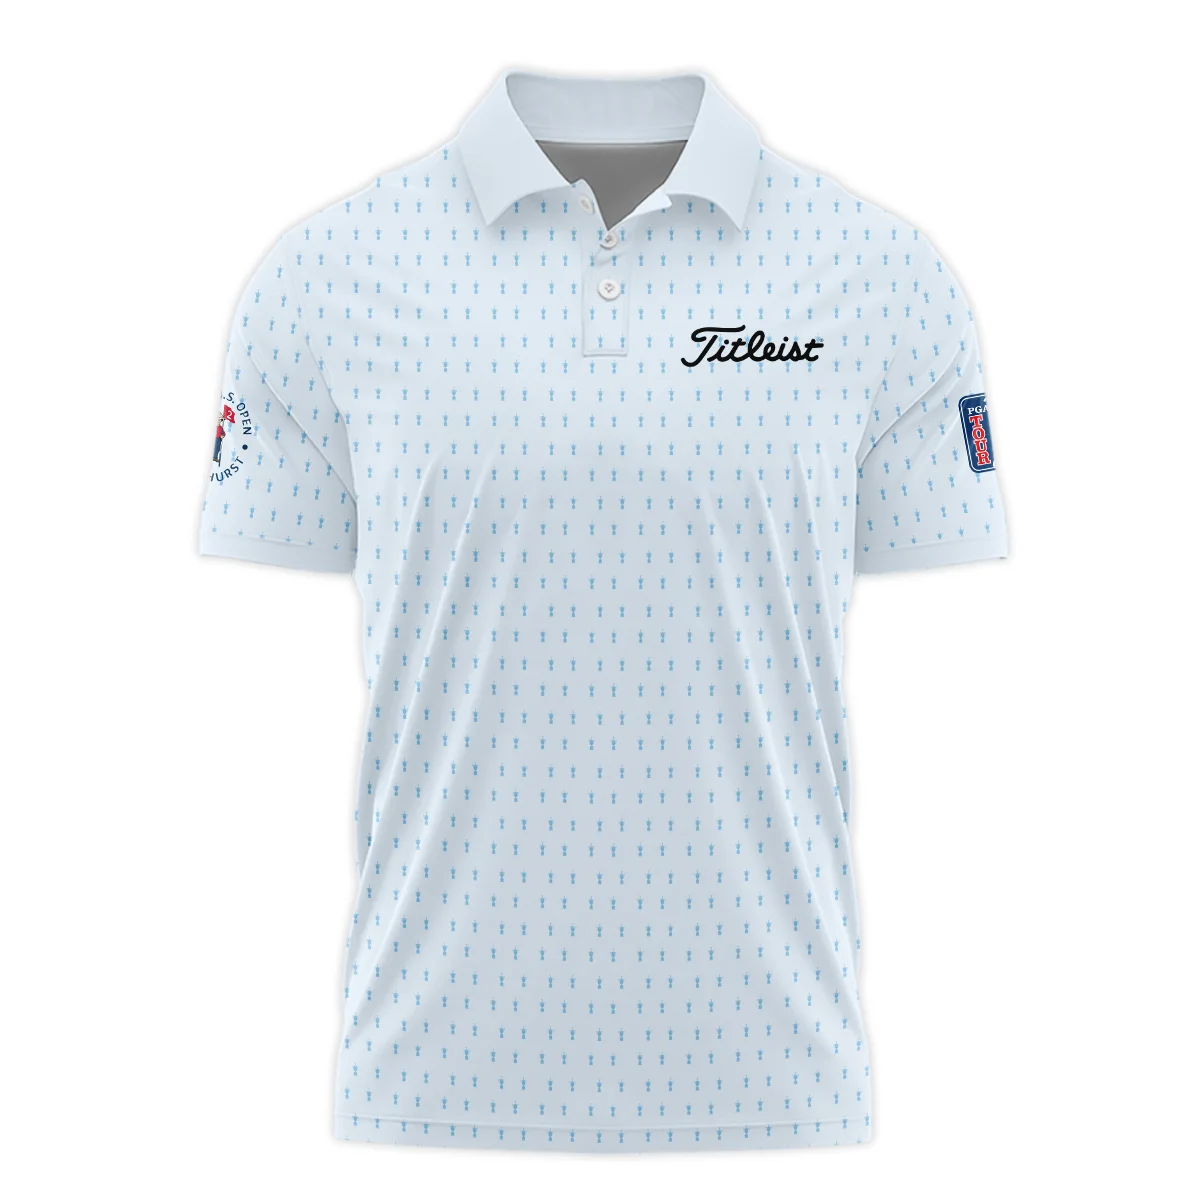 124th U.S. Open Pinehurst Titleist Zipper Hoodie Shirt Sports Pattern Cup Color Light Blue All Over Print Zipper Hoodie Shirt